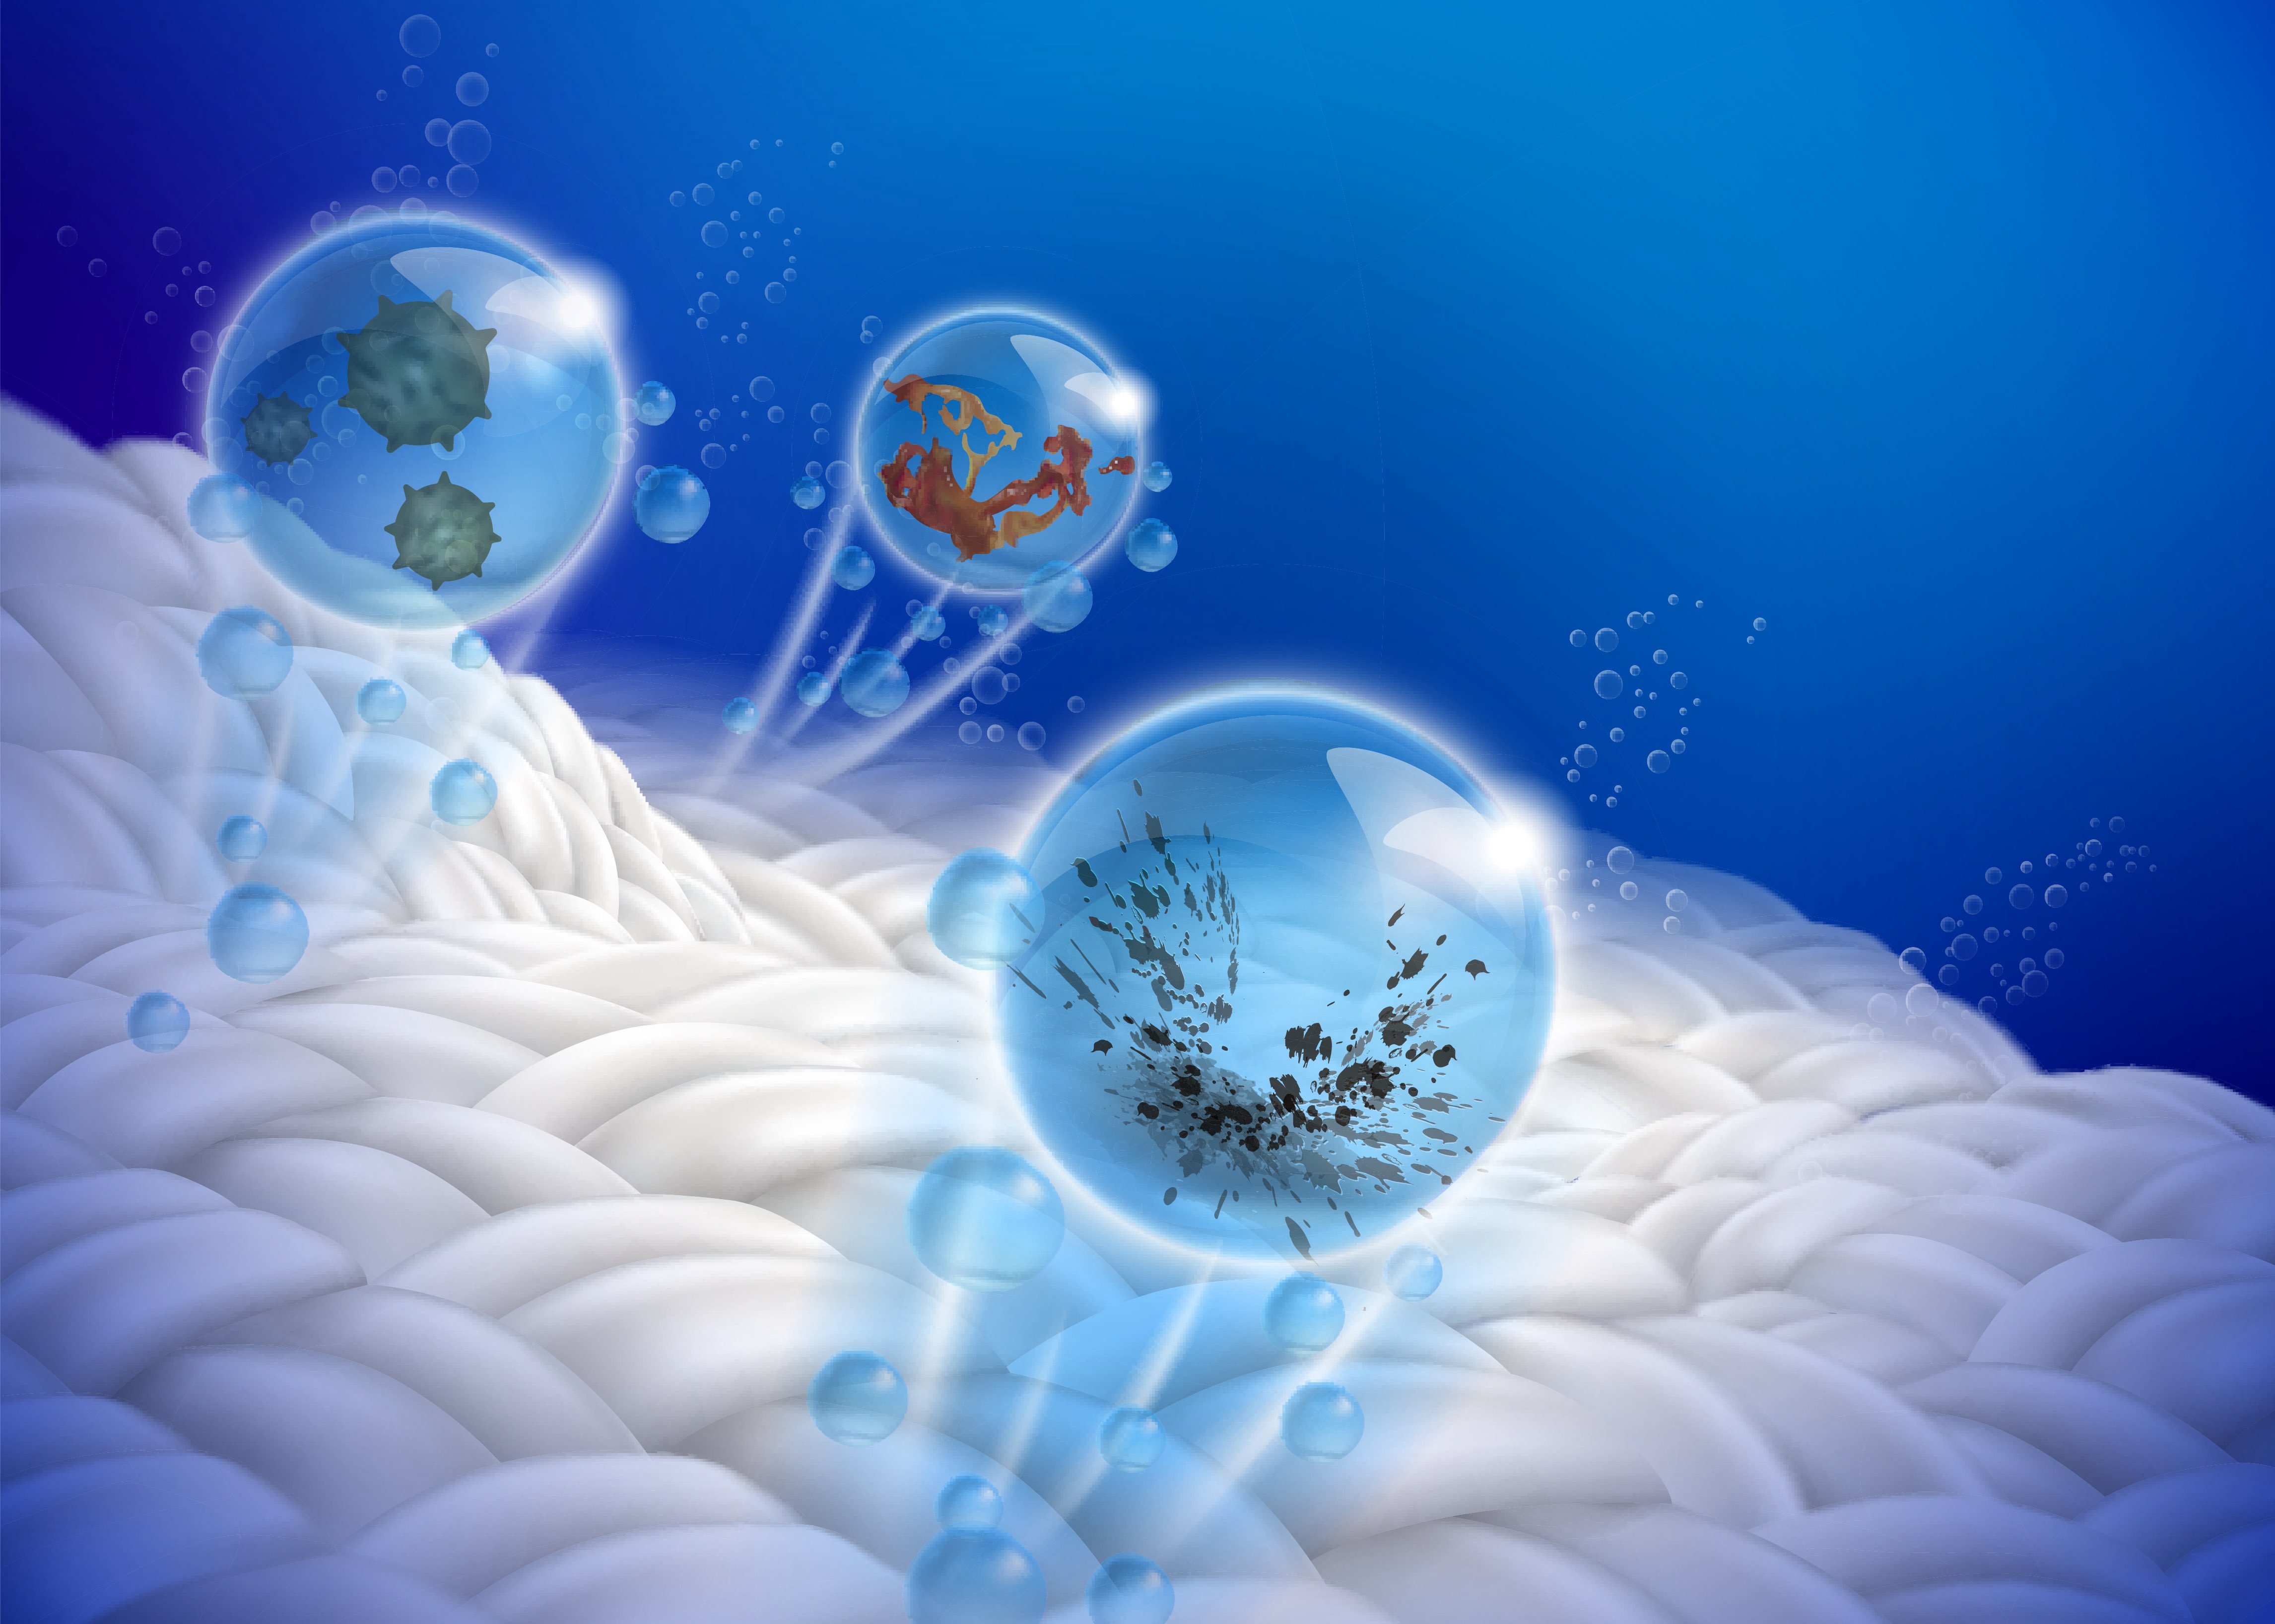 Bubbles detergent laundry science.jpg